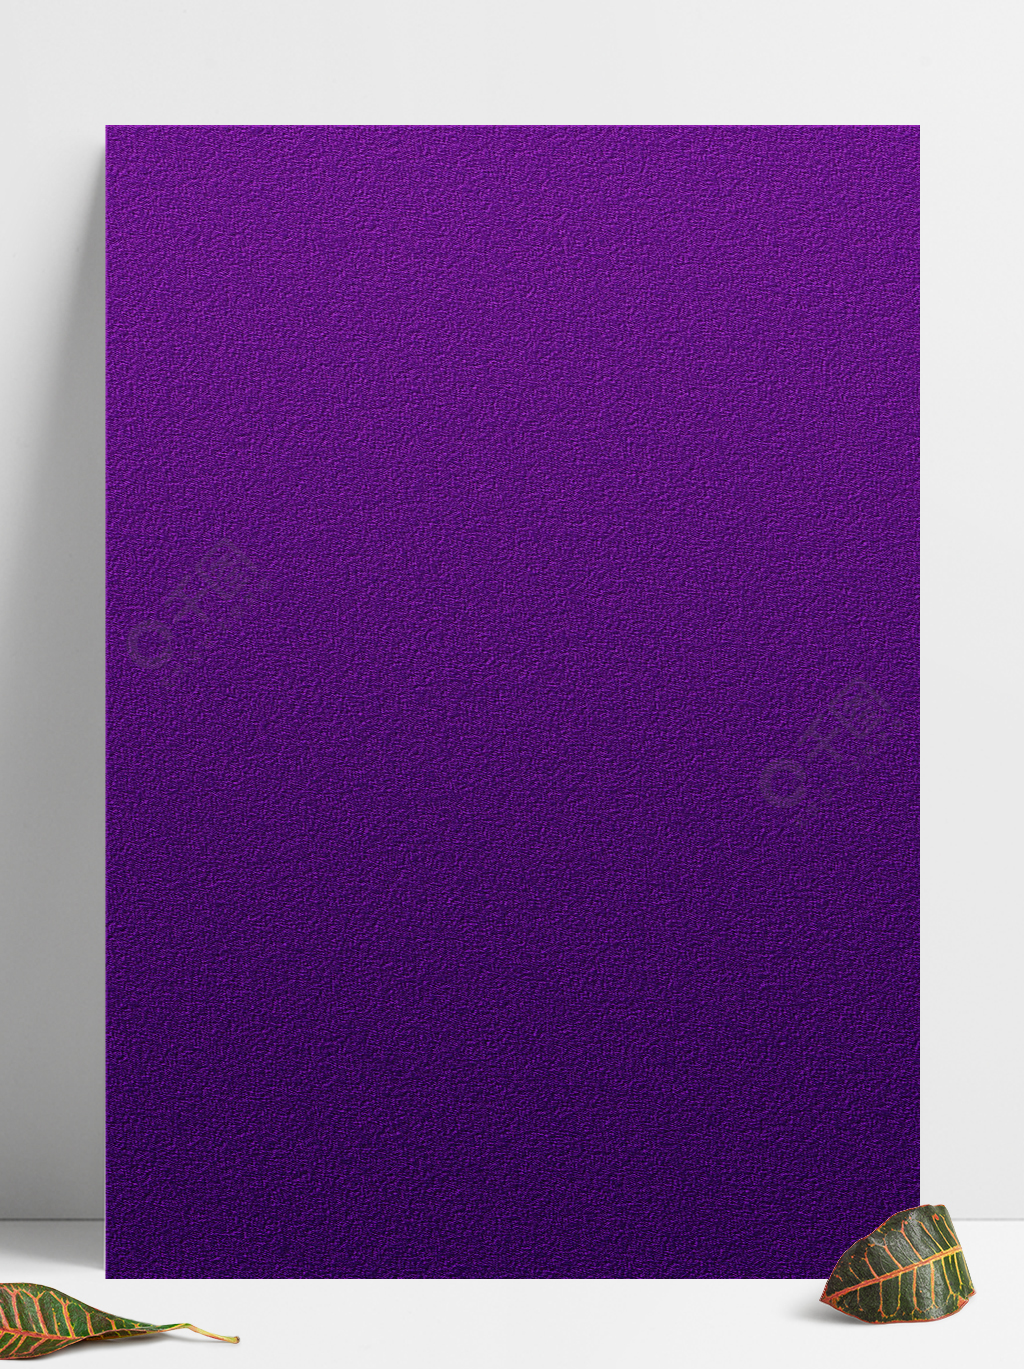 磨砂紫效果背景图半年前发布